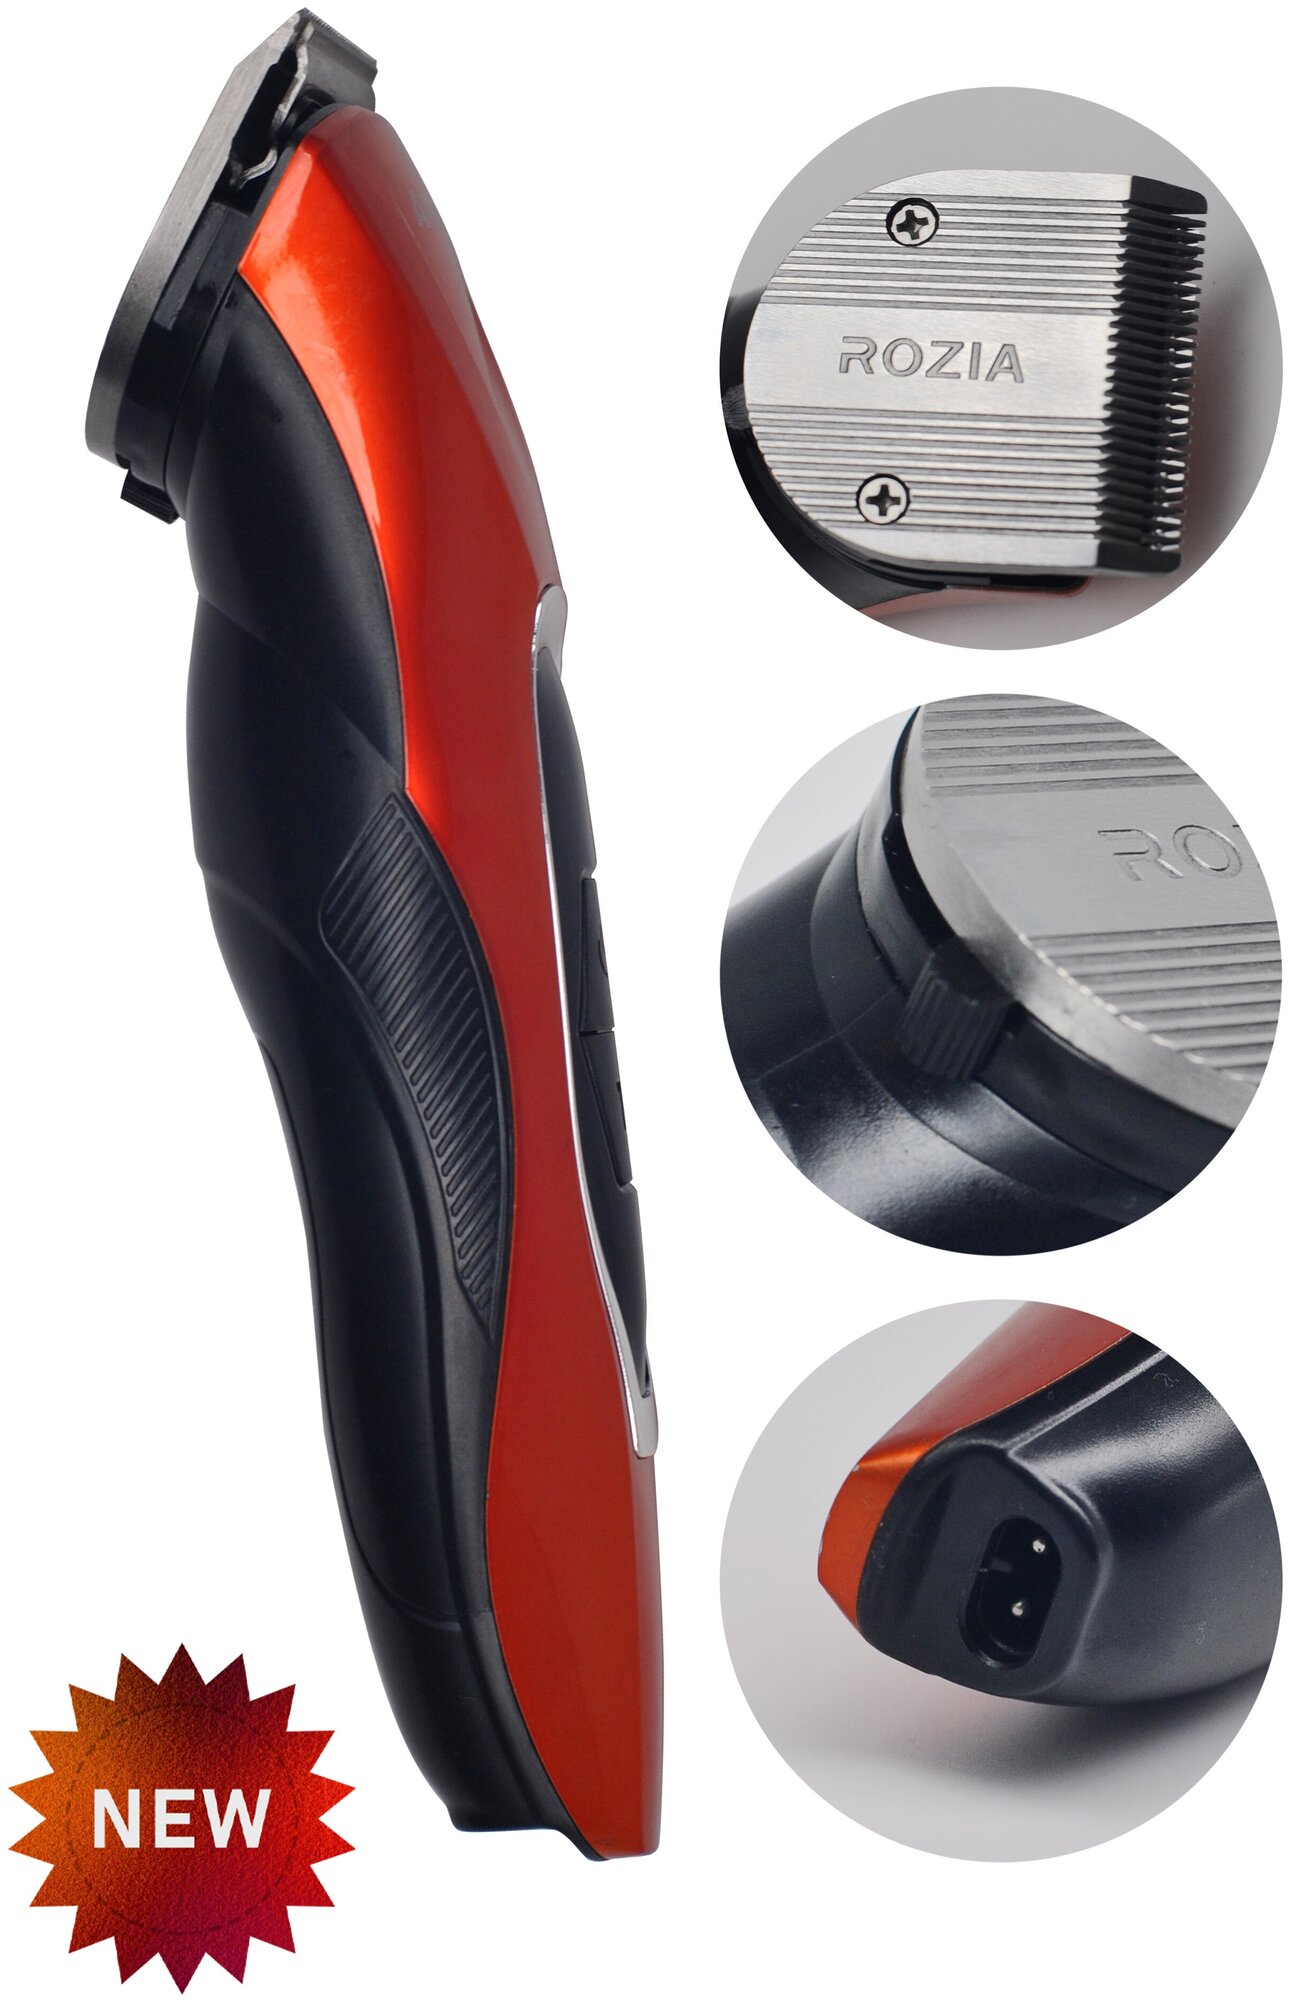 Профессиональная машинка для стрижка волос RZ,триммер для стрижки,уход для мужчин,красно-черный c TURBO режимом,UP+